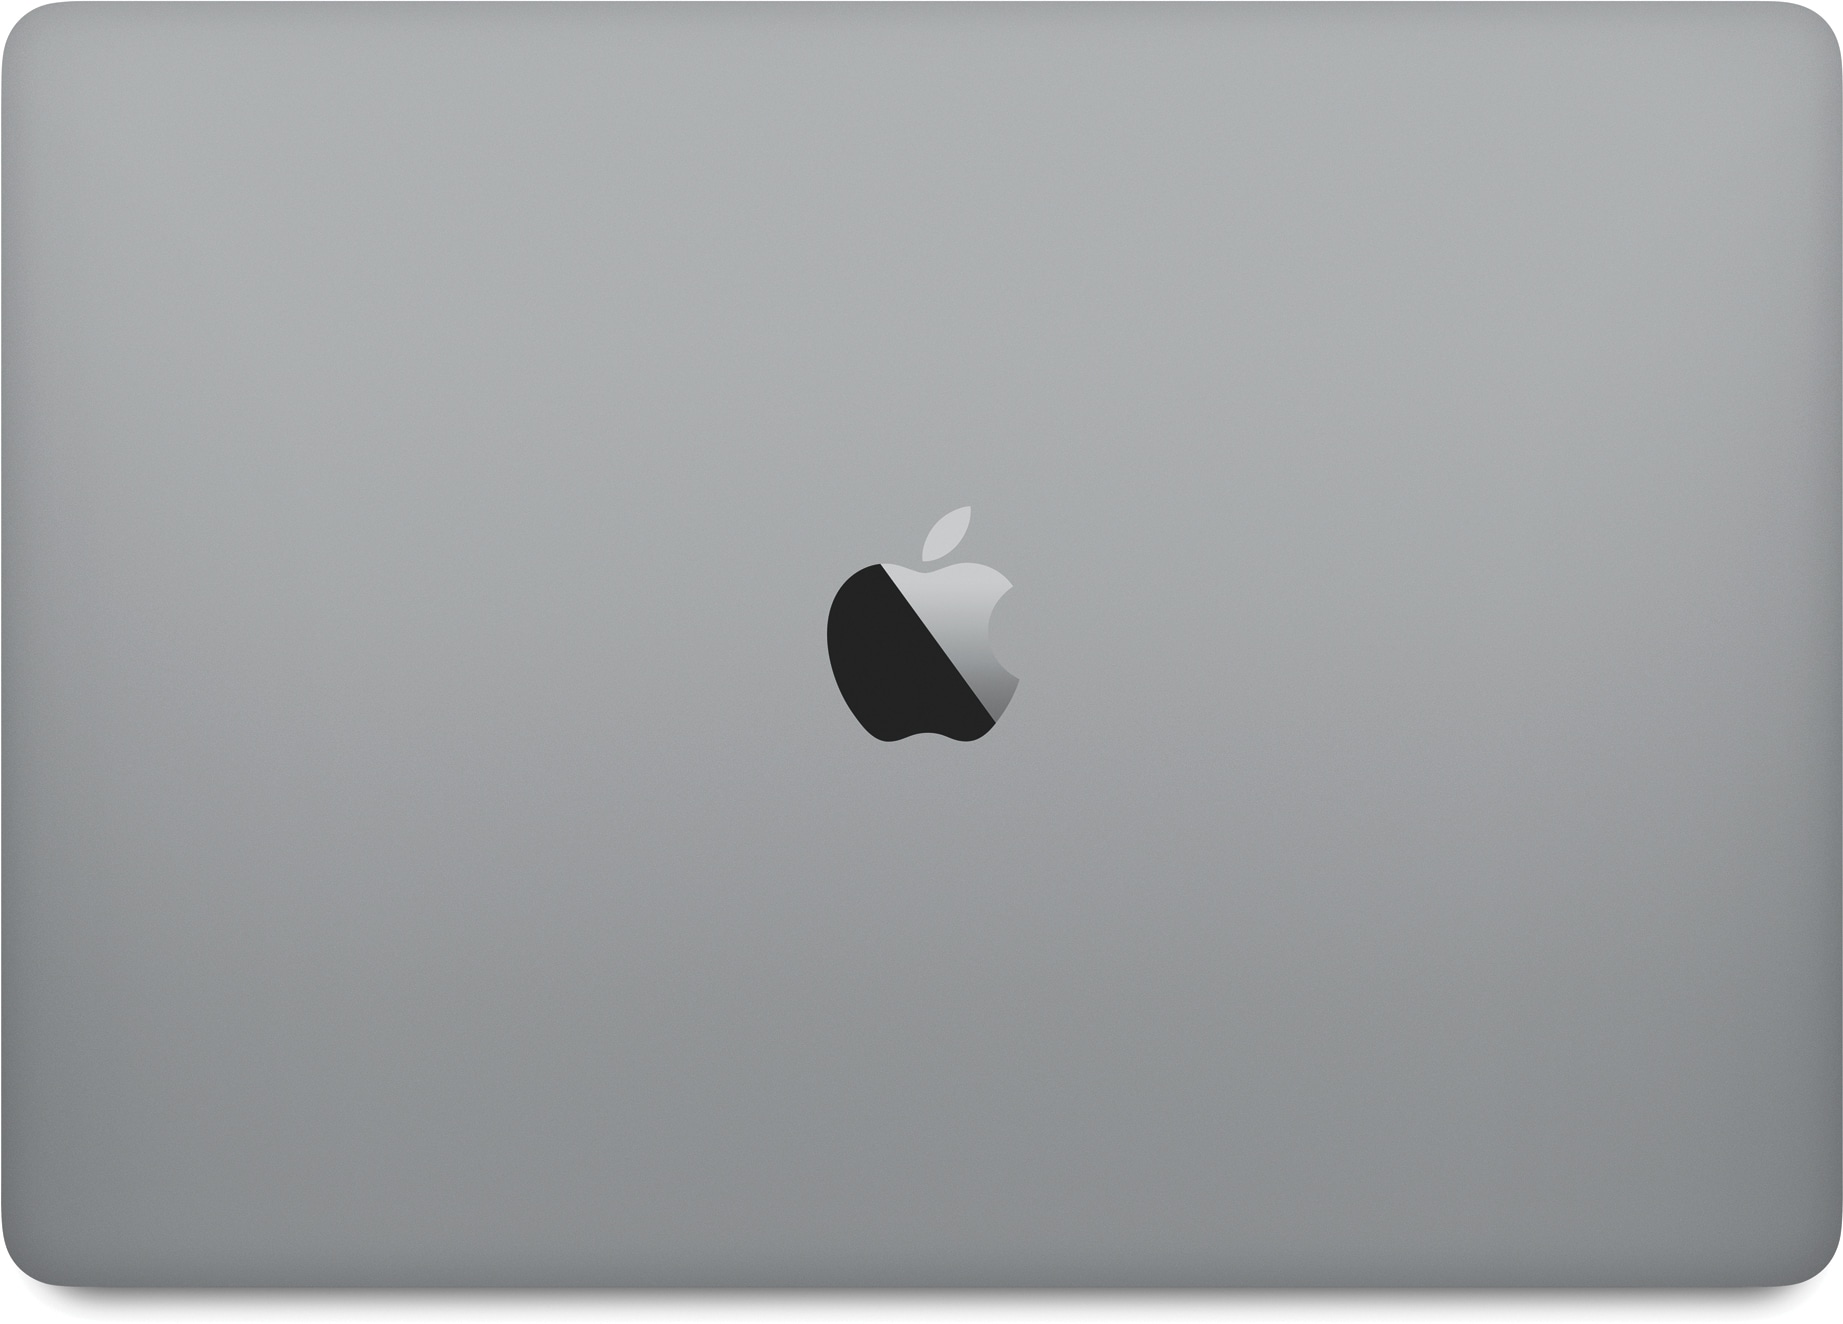 Novo MacBook Pro cinza espacial fechado visto de cima